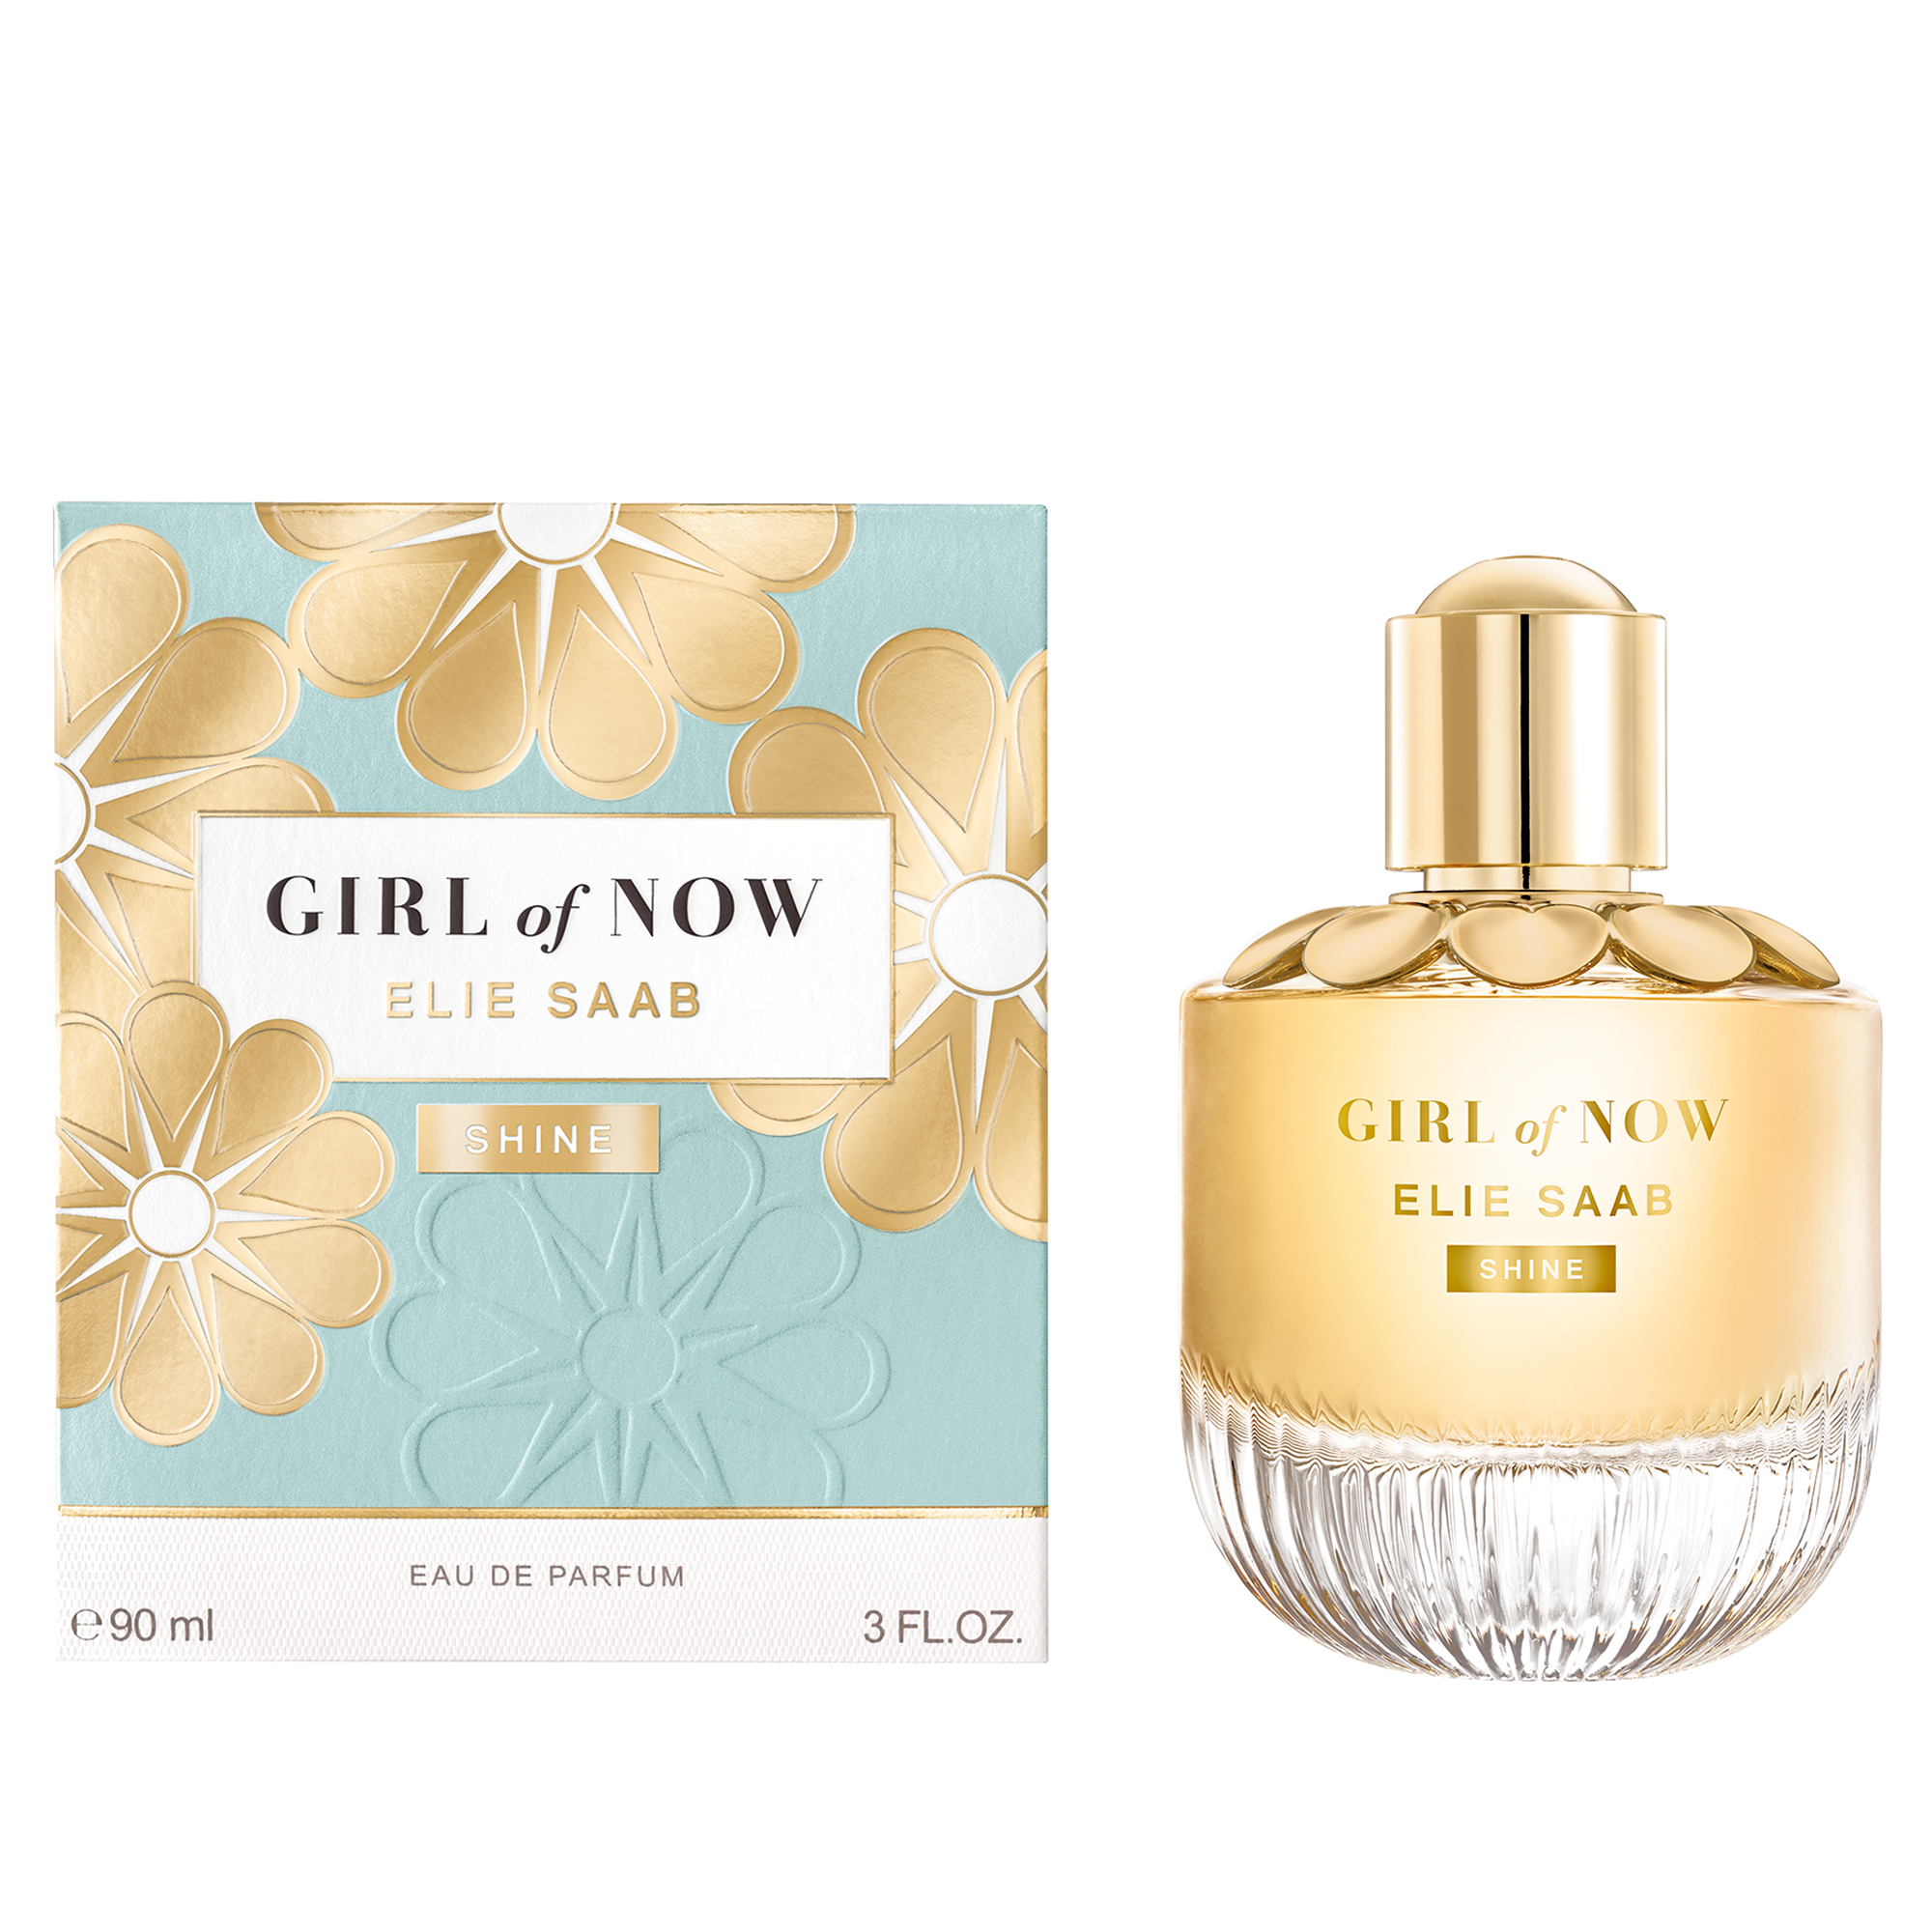 Elie Saab Girl of Now Shine  Eau de Parfum